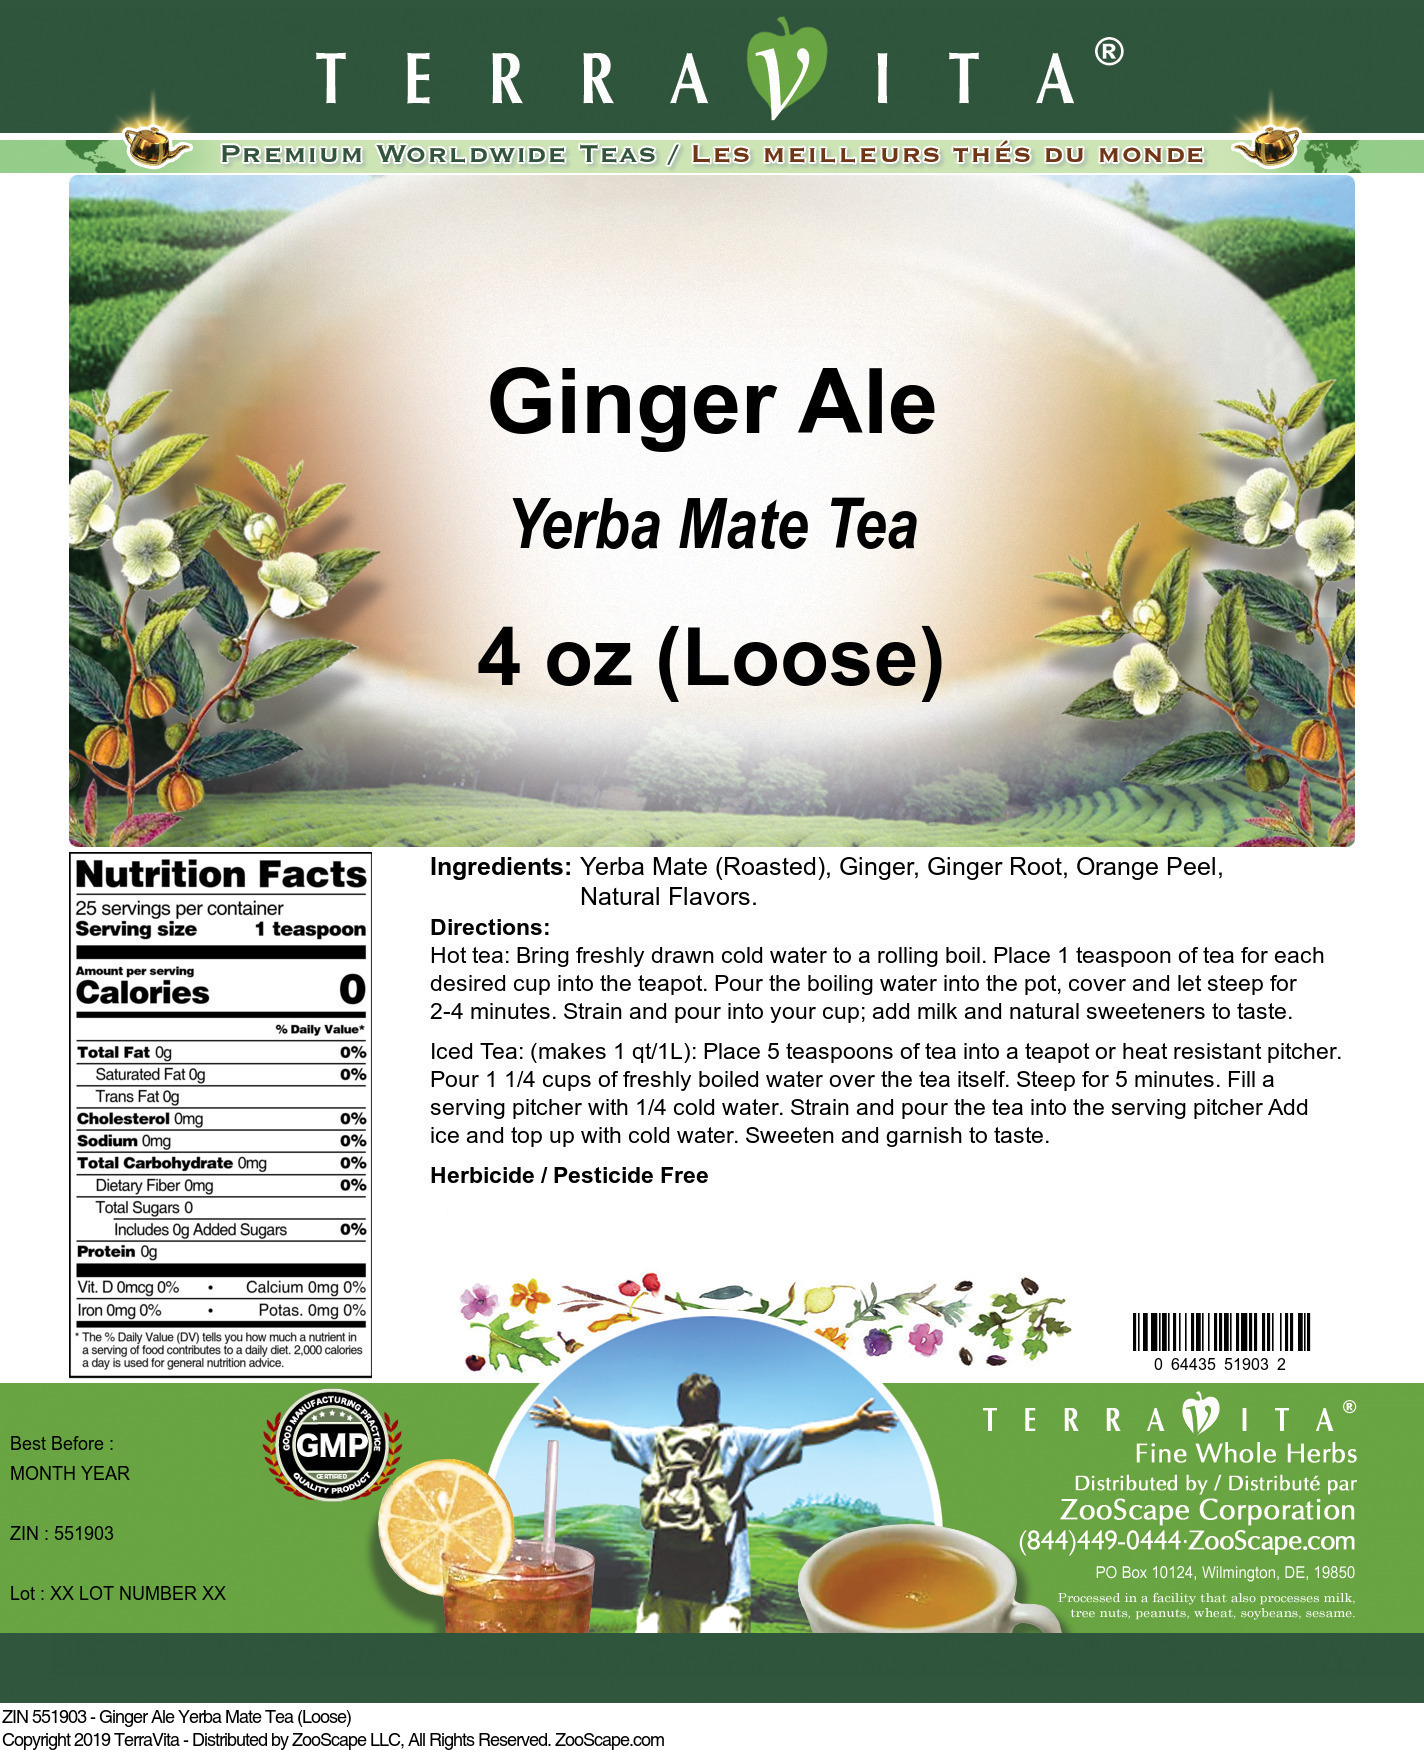 Ginger Ale Yerba Mate Tea (Loose) - Label